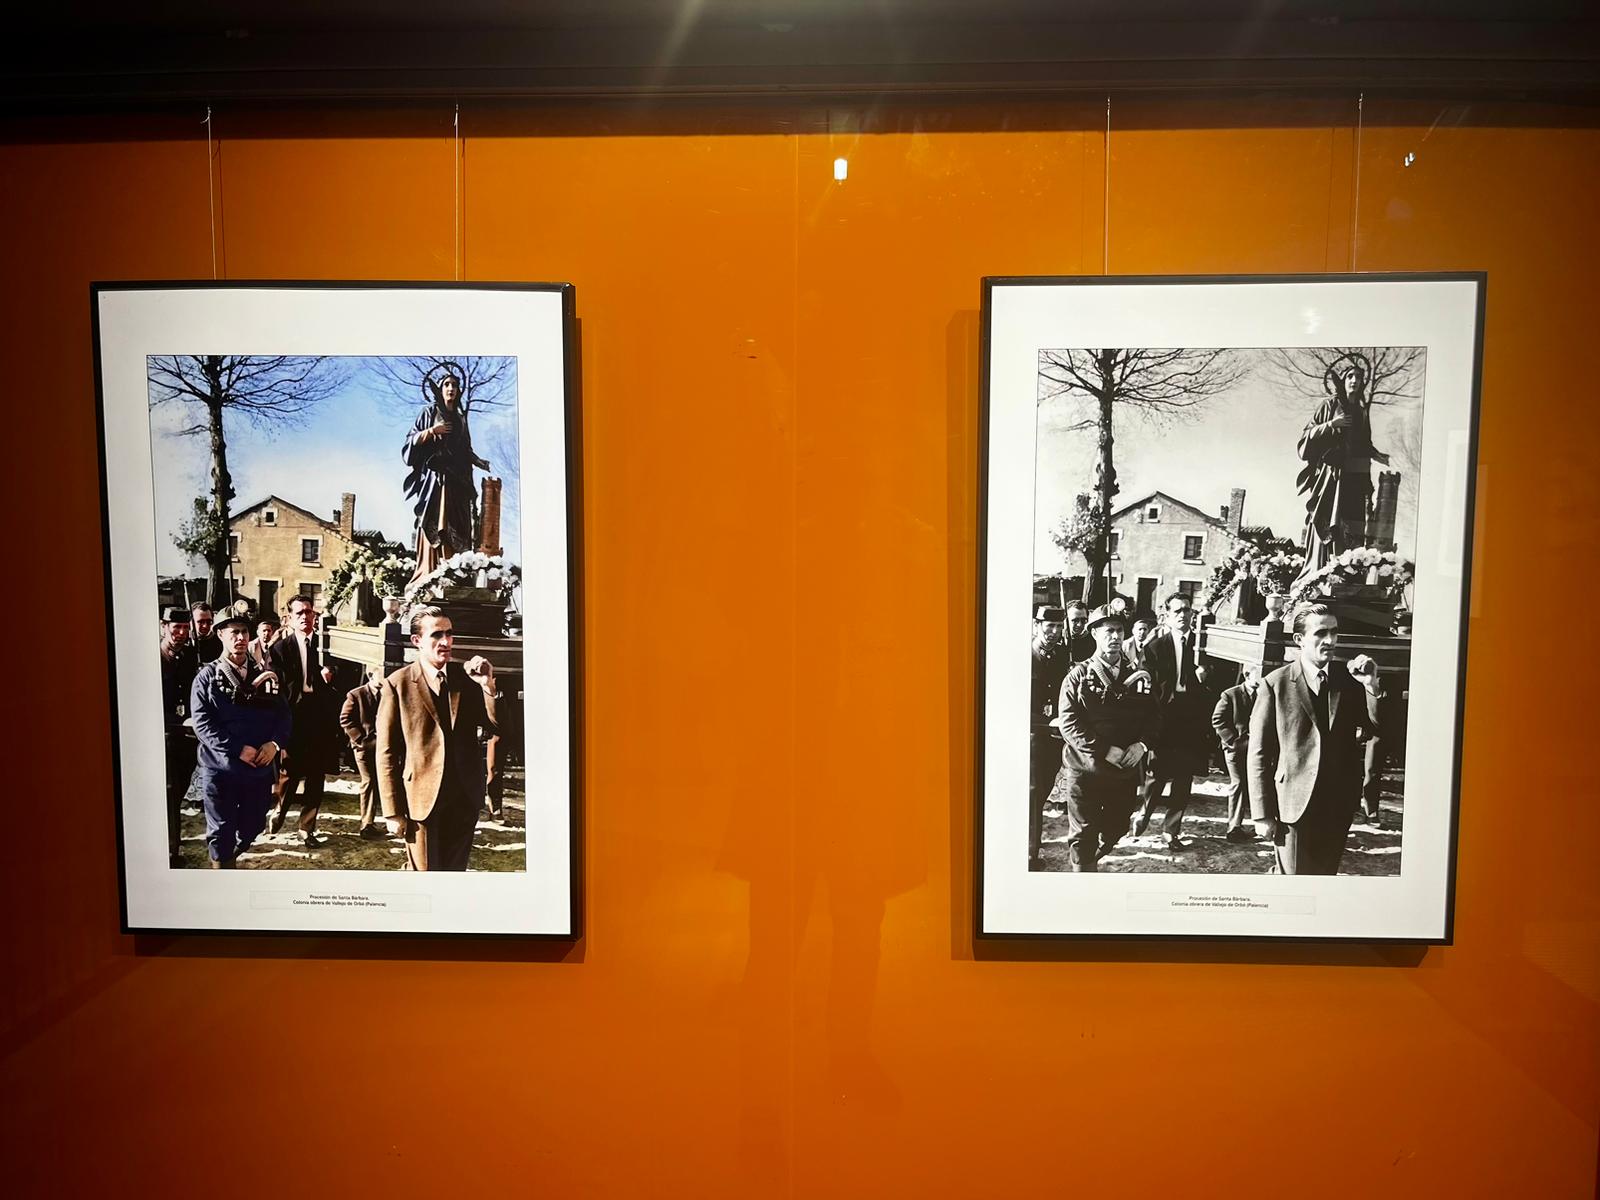 La exposición del MSM, que da origen al taller, muestra viejas fotos en blanco y negro que UIrdangaray ha coloreado.